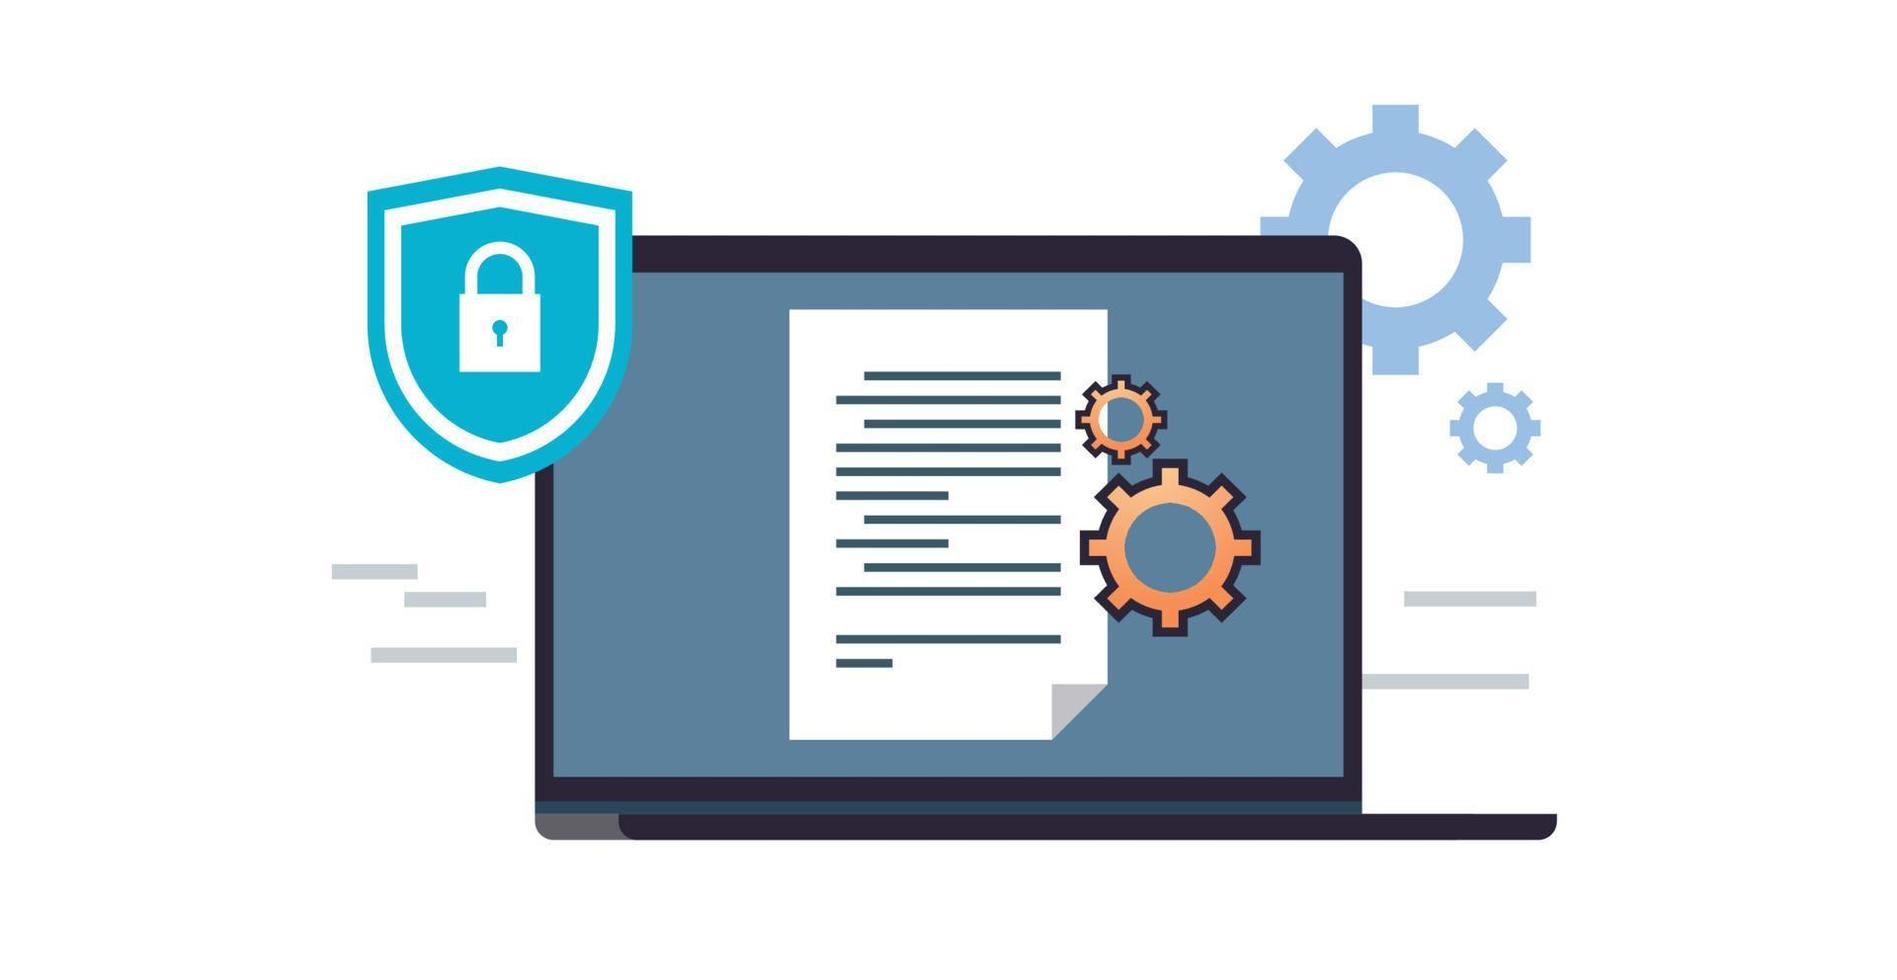 protection des données et cybersécurité dans le réseau de serveurs internet avec accès sécurisé pour protéger la confidentialité contre les attaques illustration vectorielle plane. vecteur